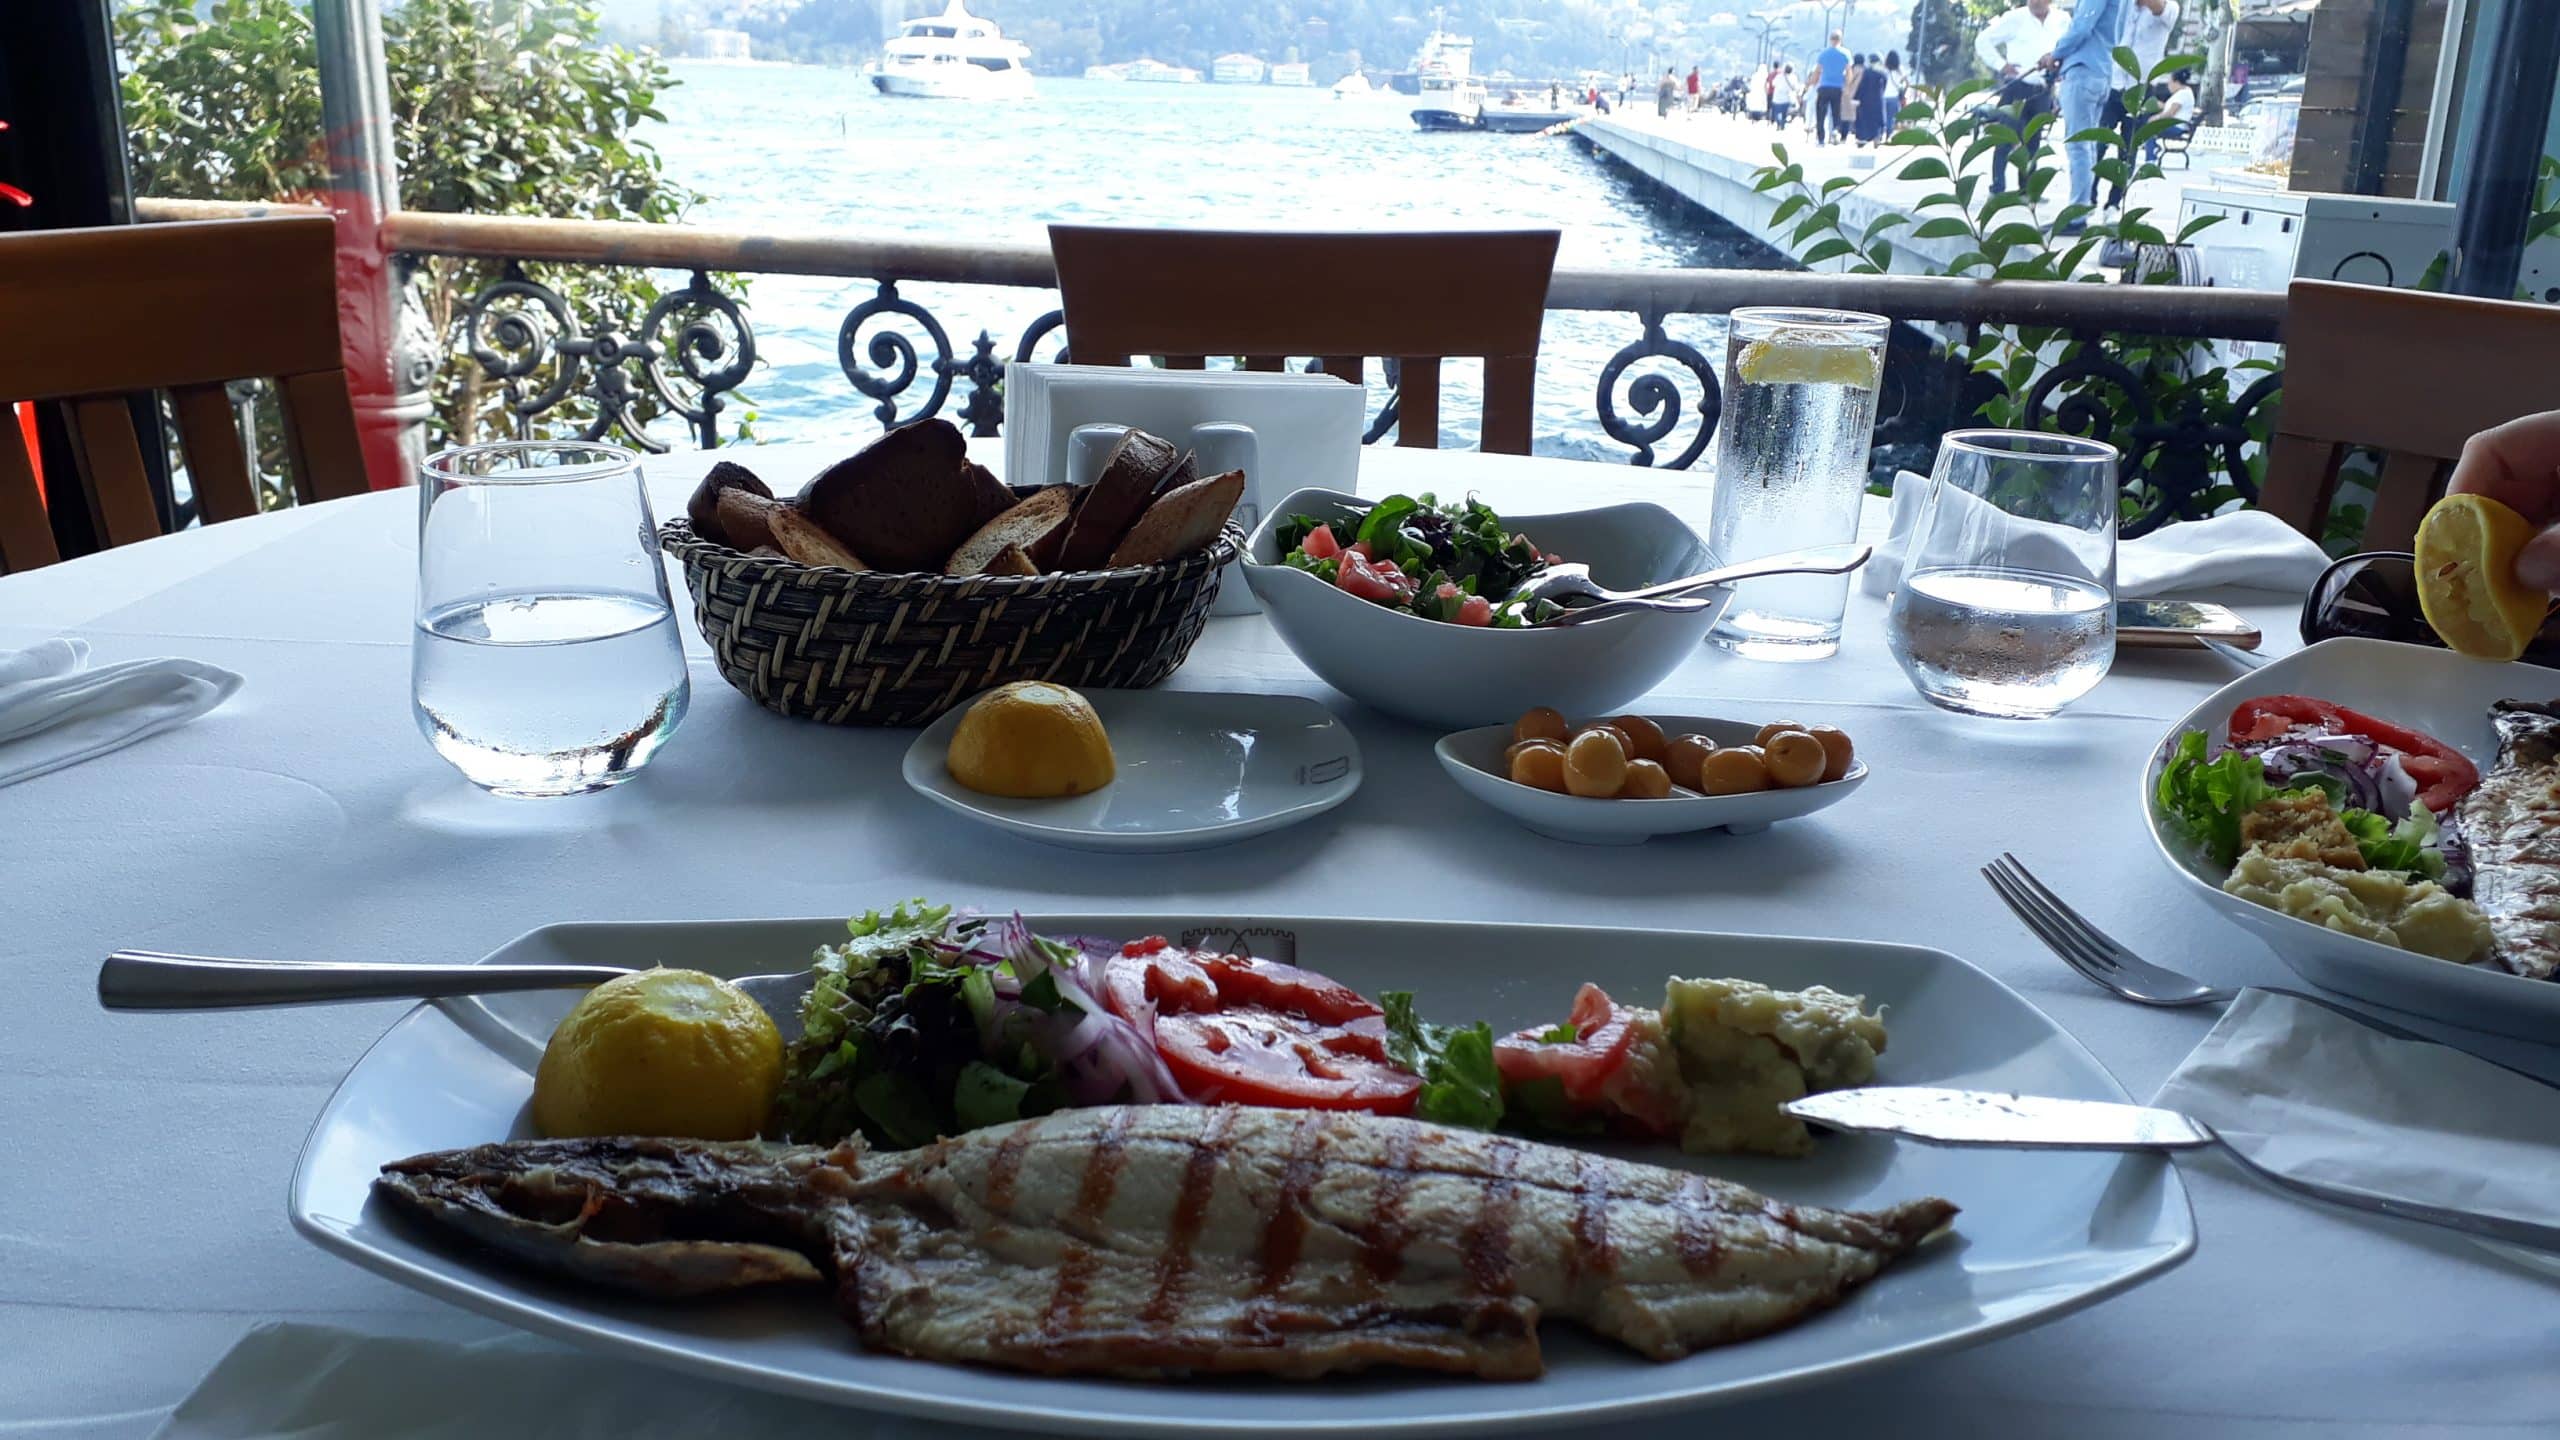 İstanbul’un en iyi balık restoranları